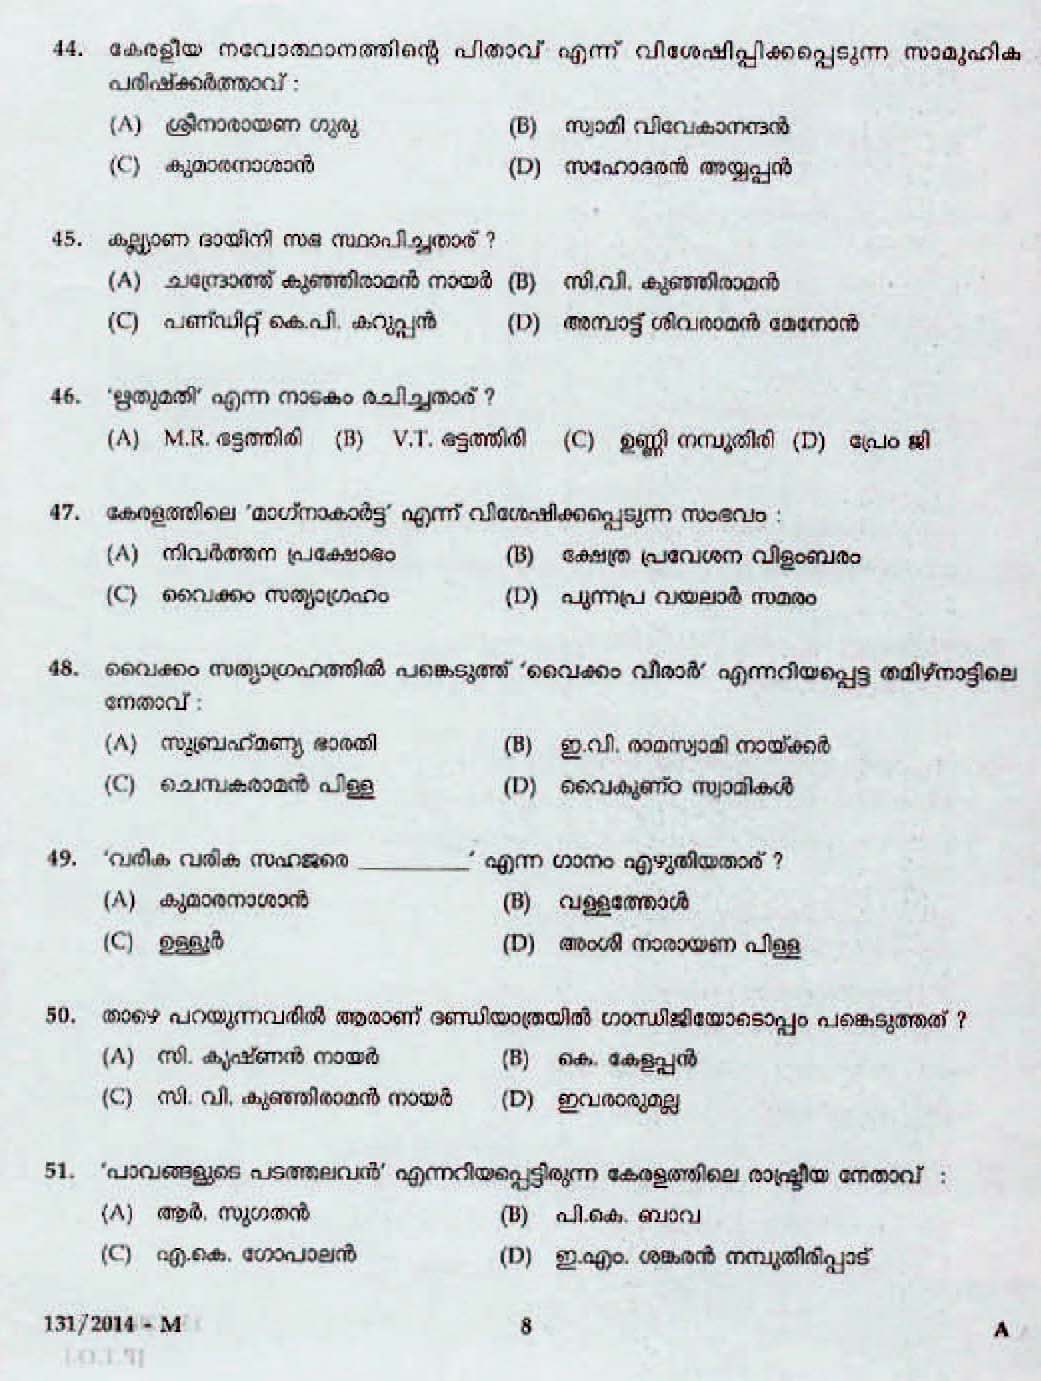 Kerala Last Grade Servants Exam 2014 Question Paper Code 1312014 M 6